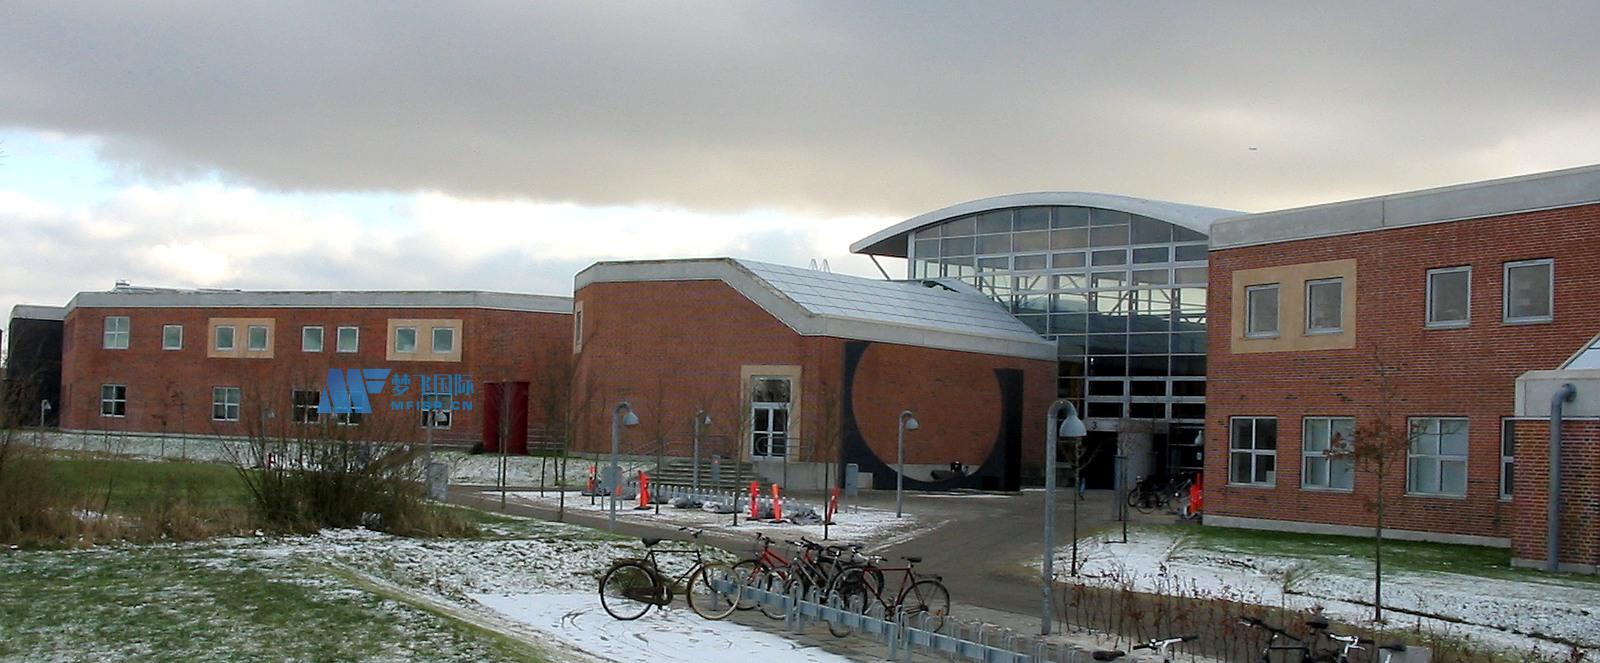 [丹麦院校] Aalborg University 奥尔堡大学